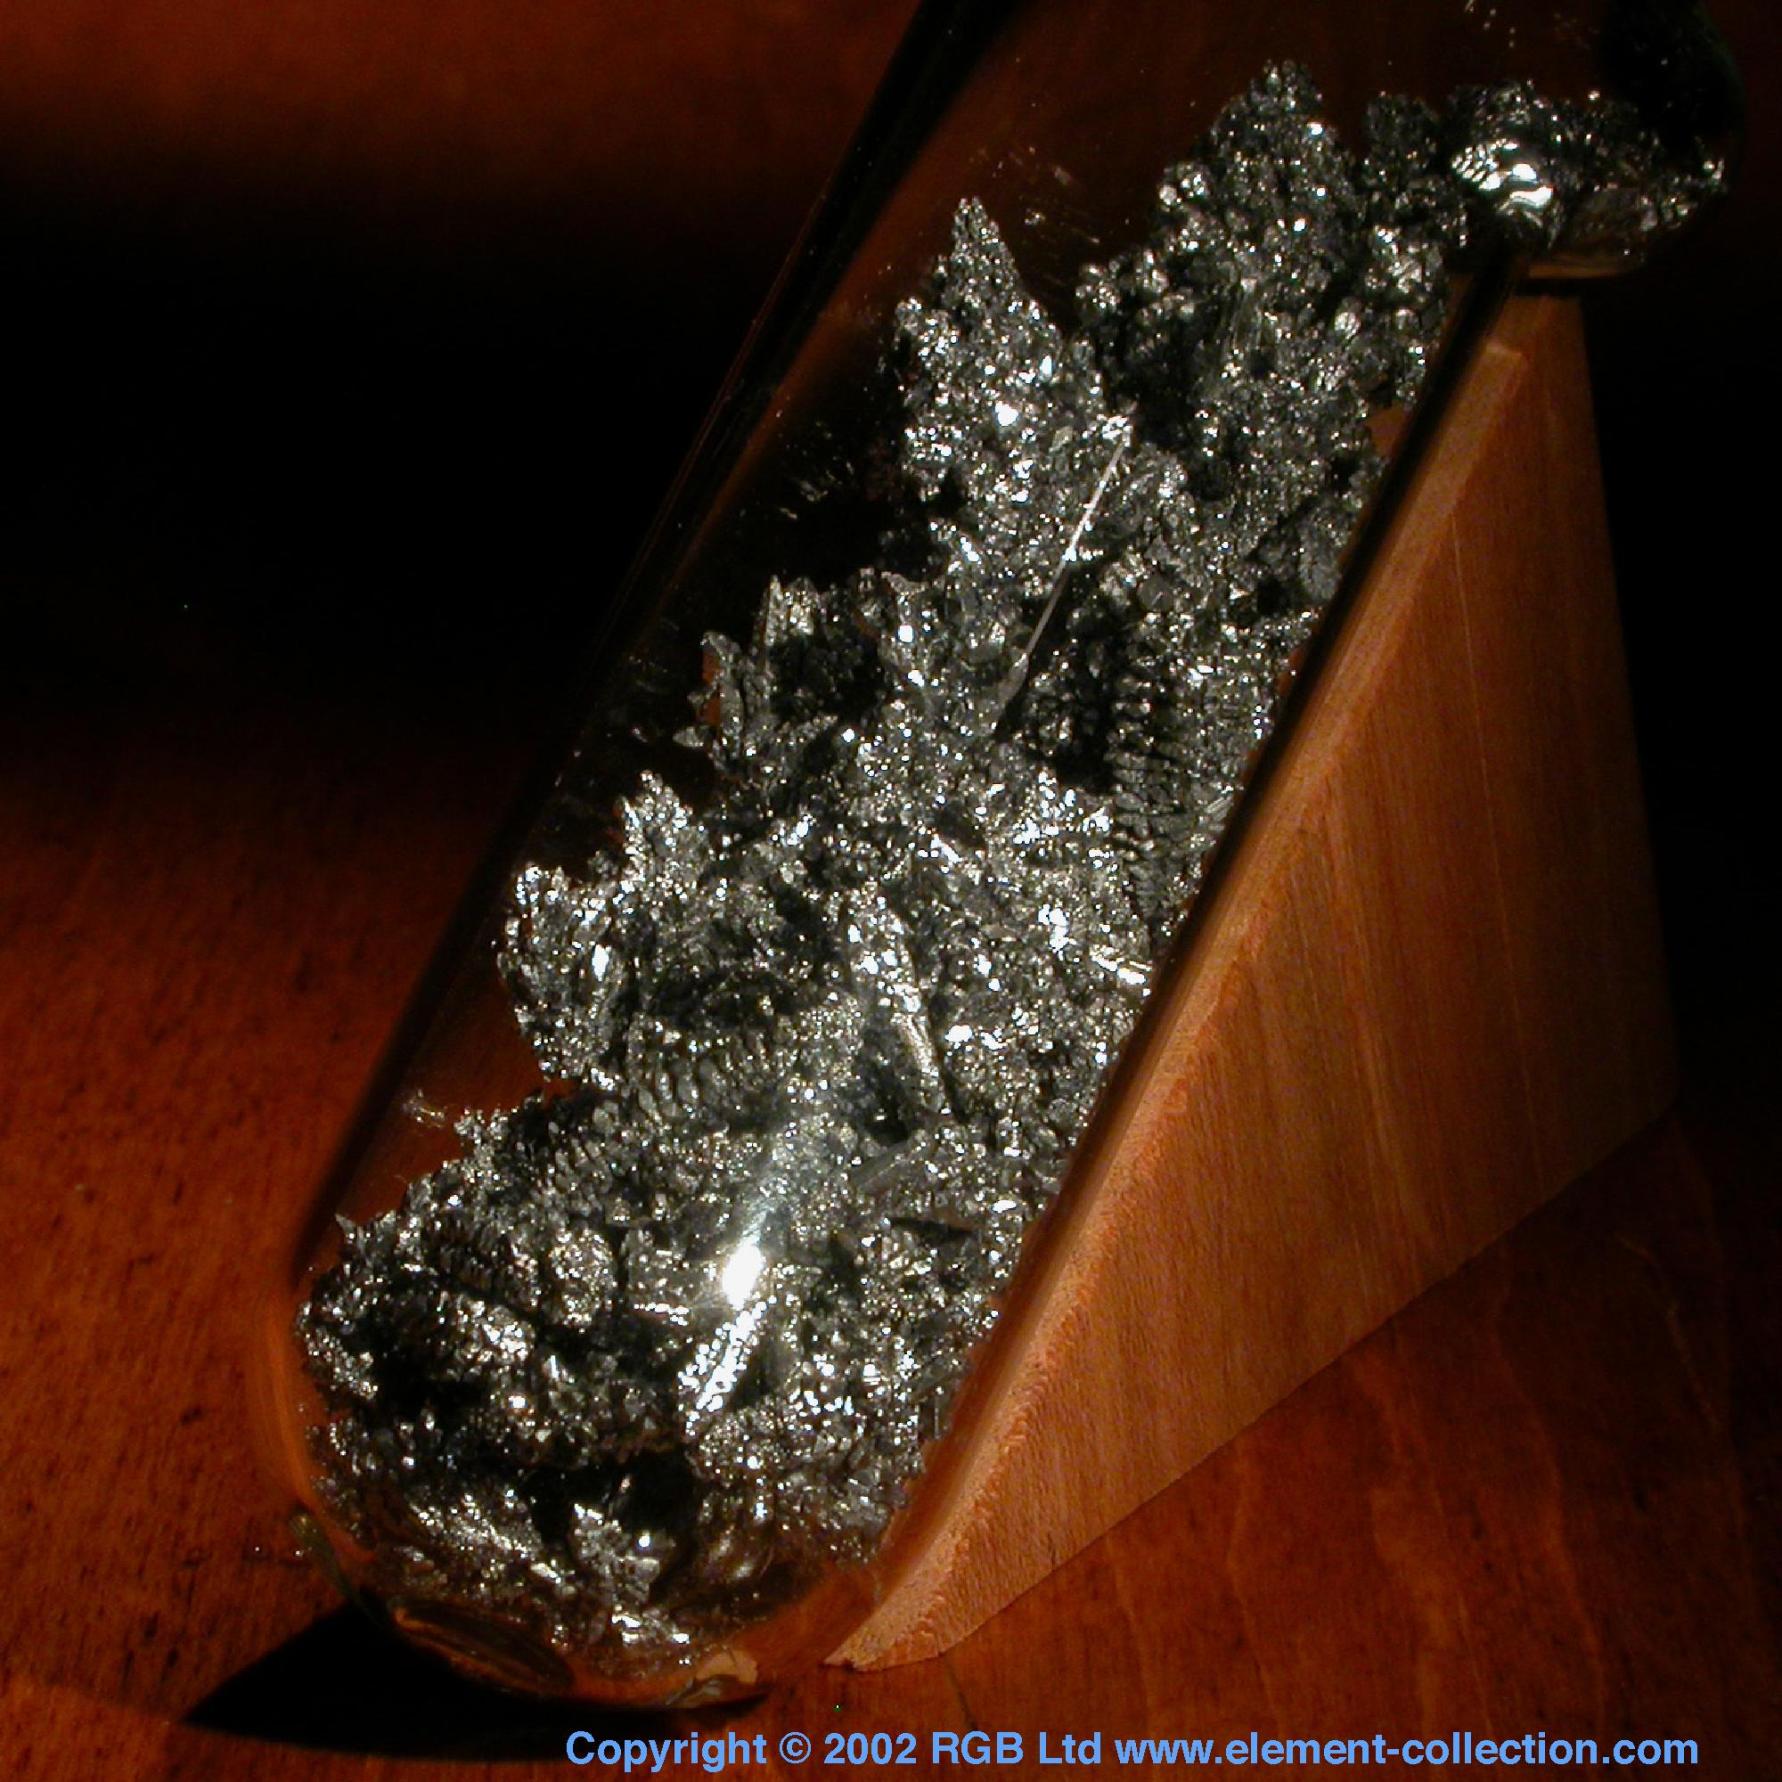 Vanadium Crystals under argon